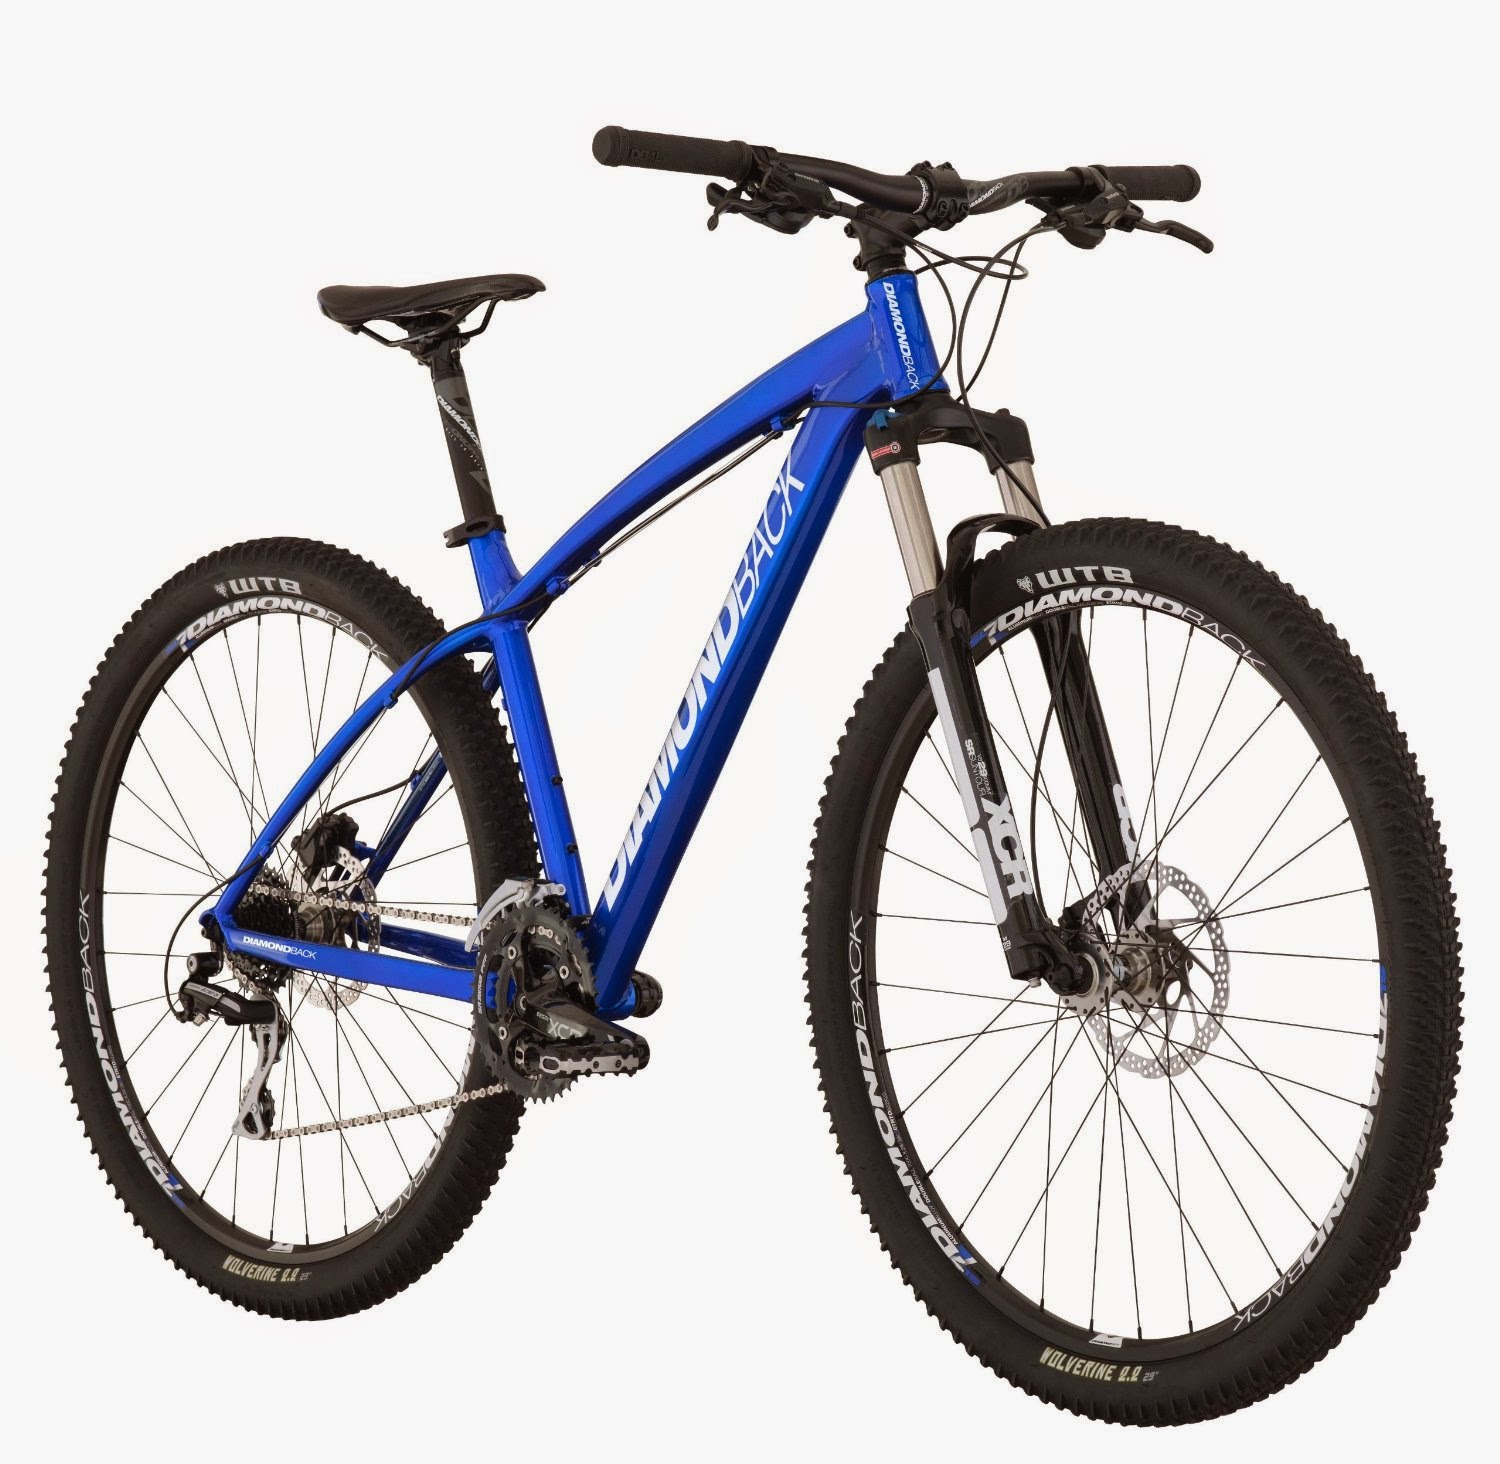 Diamondback 2014 Overdrive Sport Mountain Bike 29er, review, 29" wheels for rugged trails, disc brakes for better stopping power